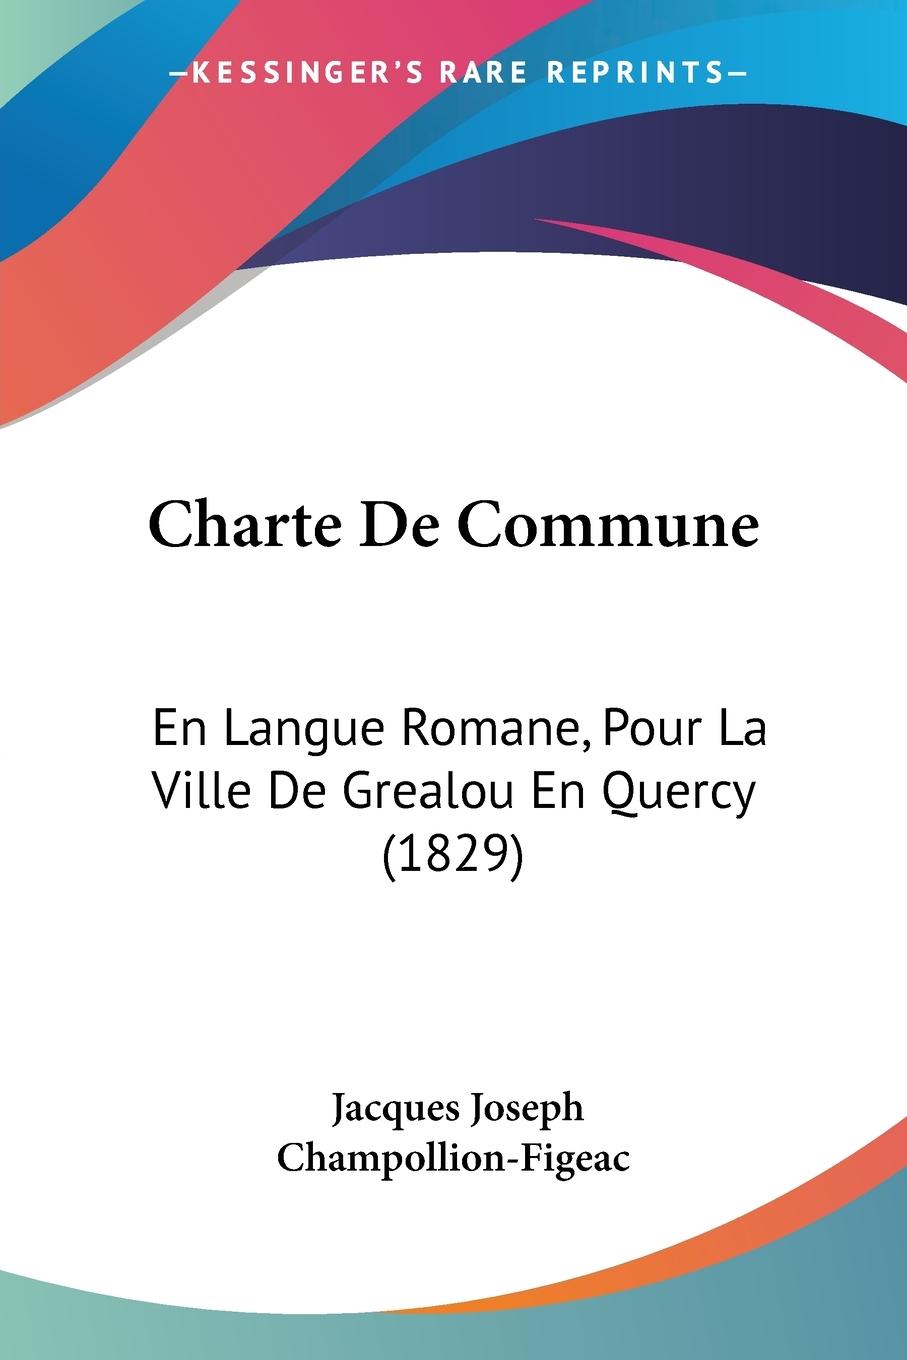 Charte De Commune - Champollion-Figeac, Jacques Joseph